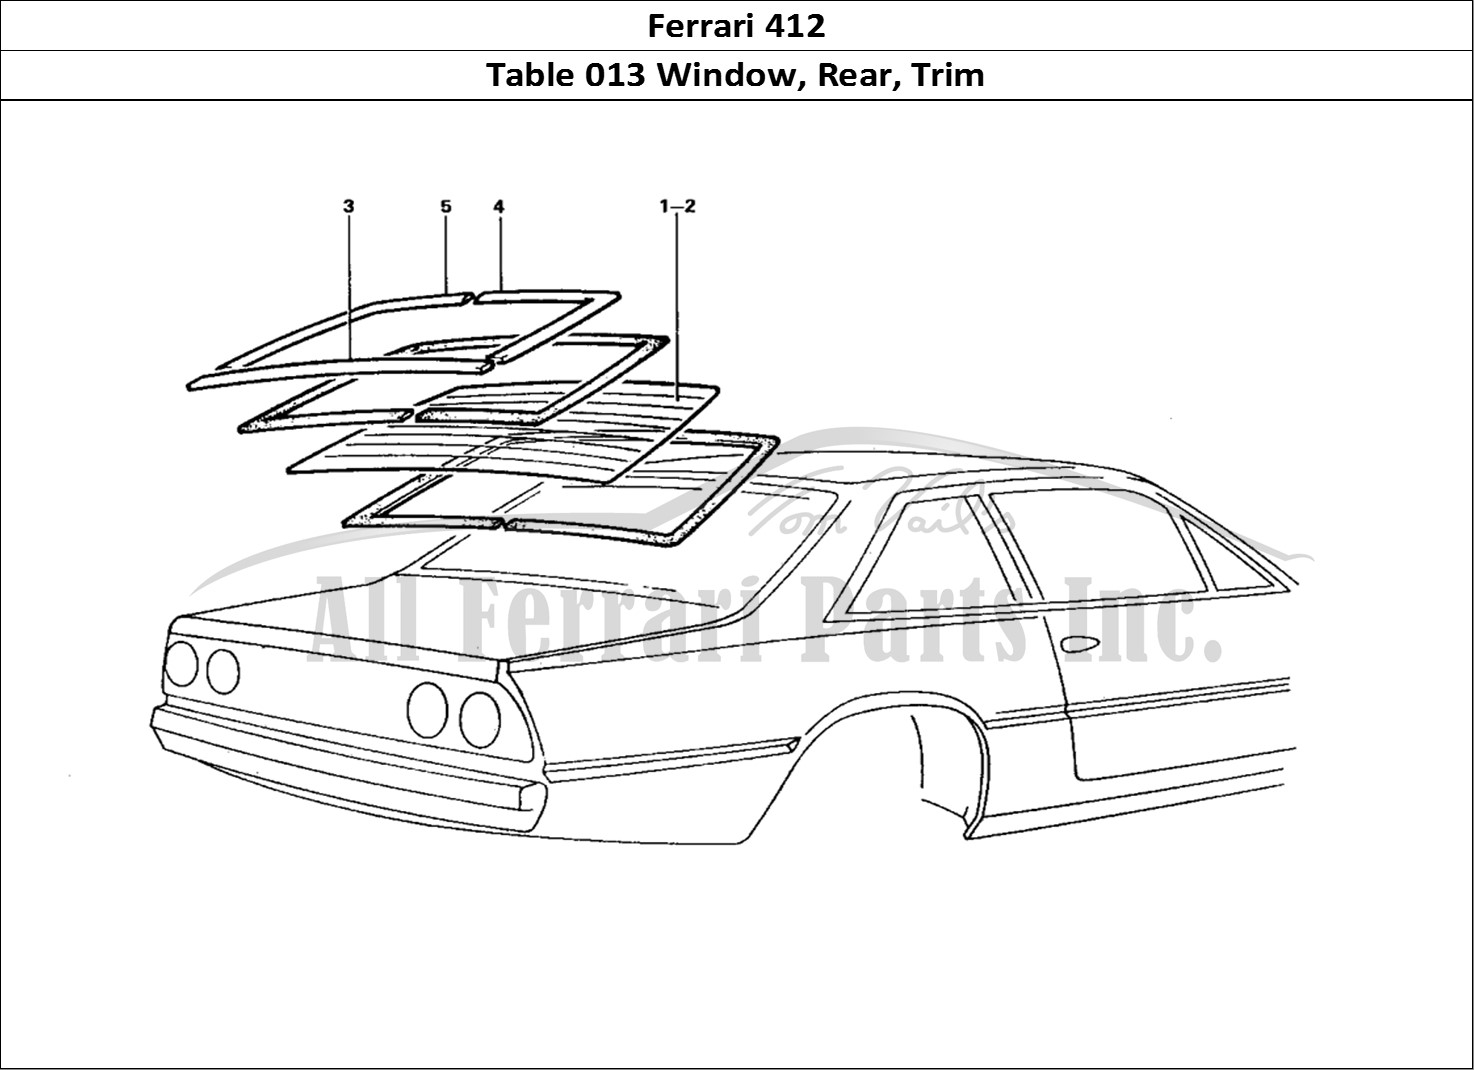 Ferrari Parts Ferrari 412 (Coachwork) Page 013 Rear Screen & Trims